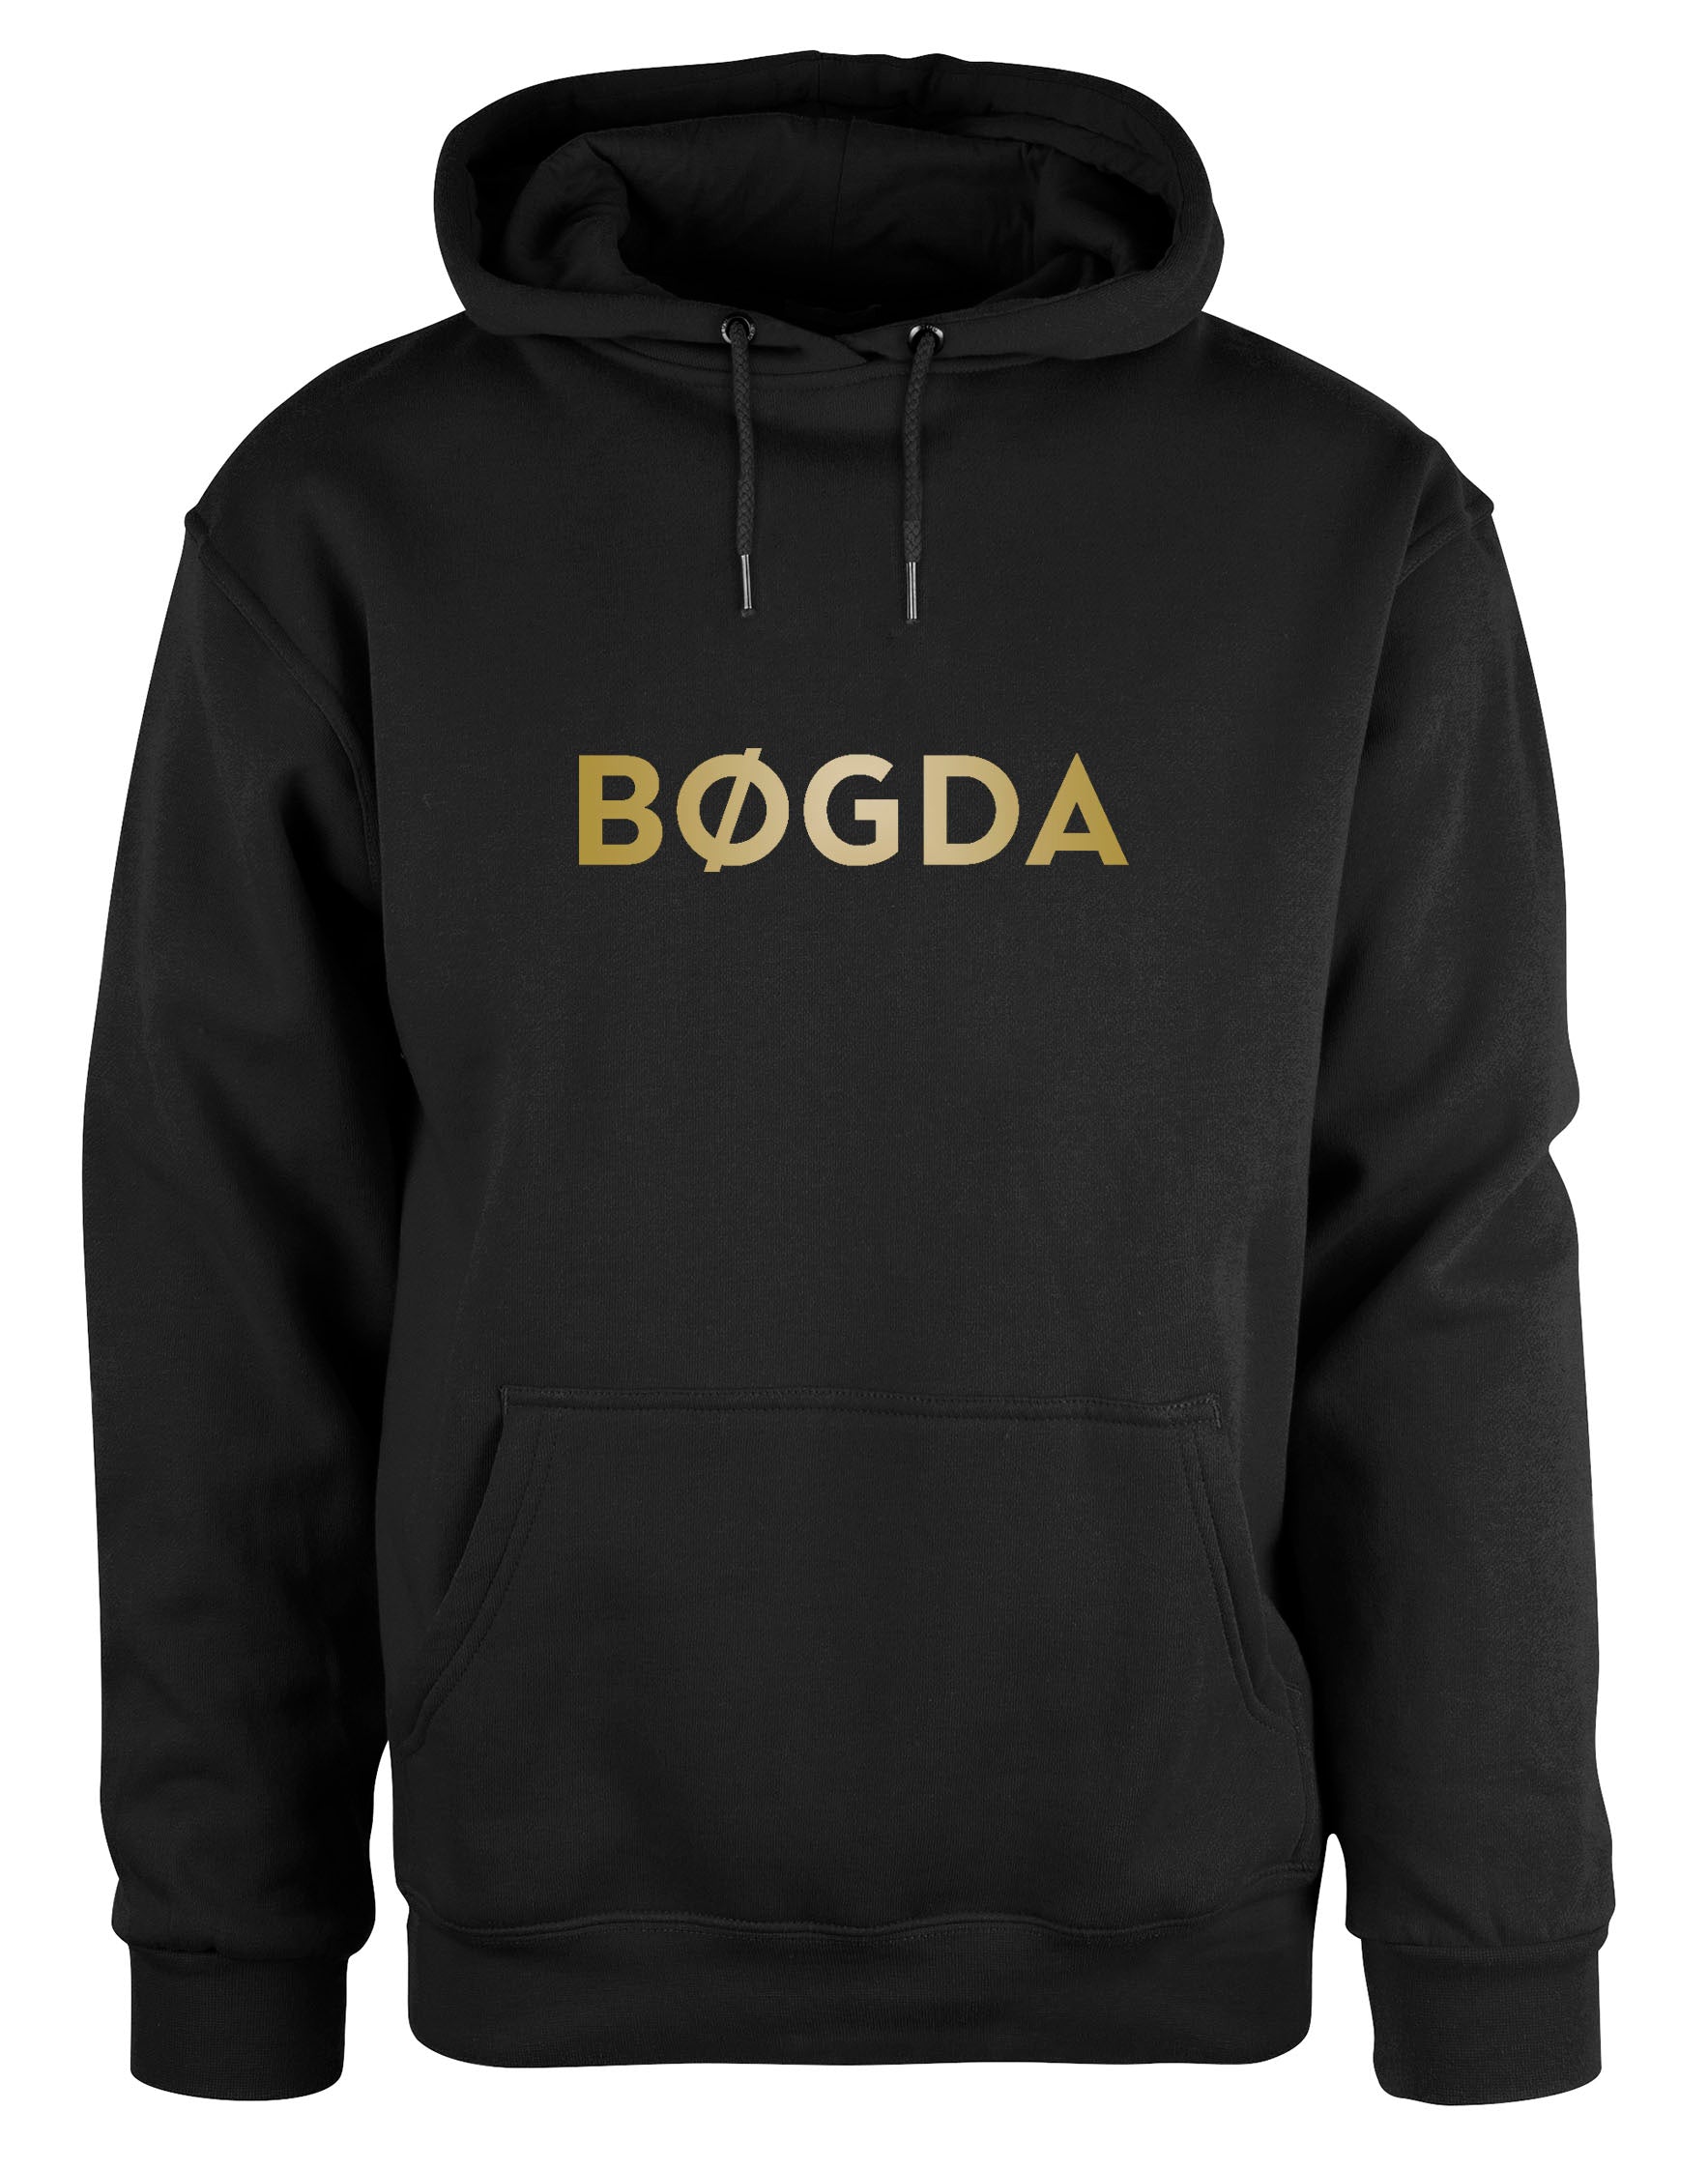 Bøgda Gold hoodie